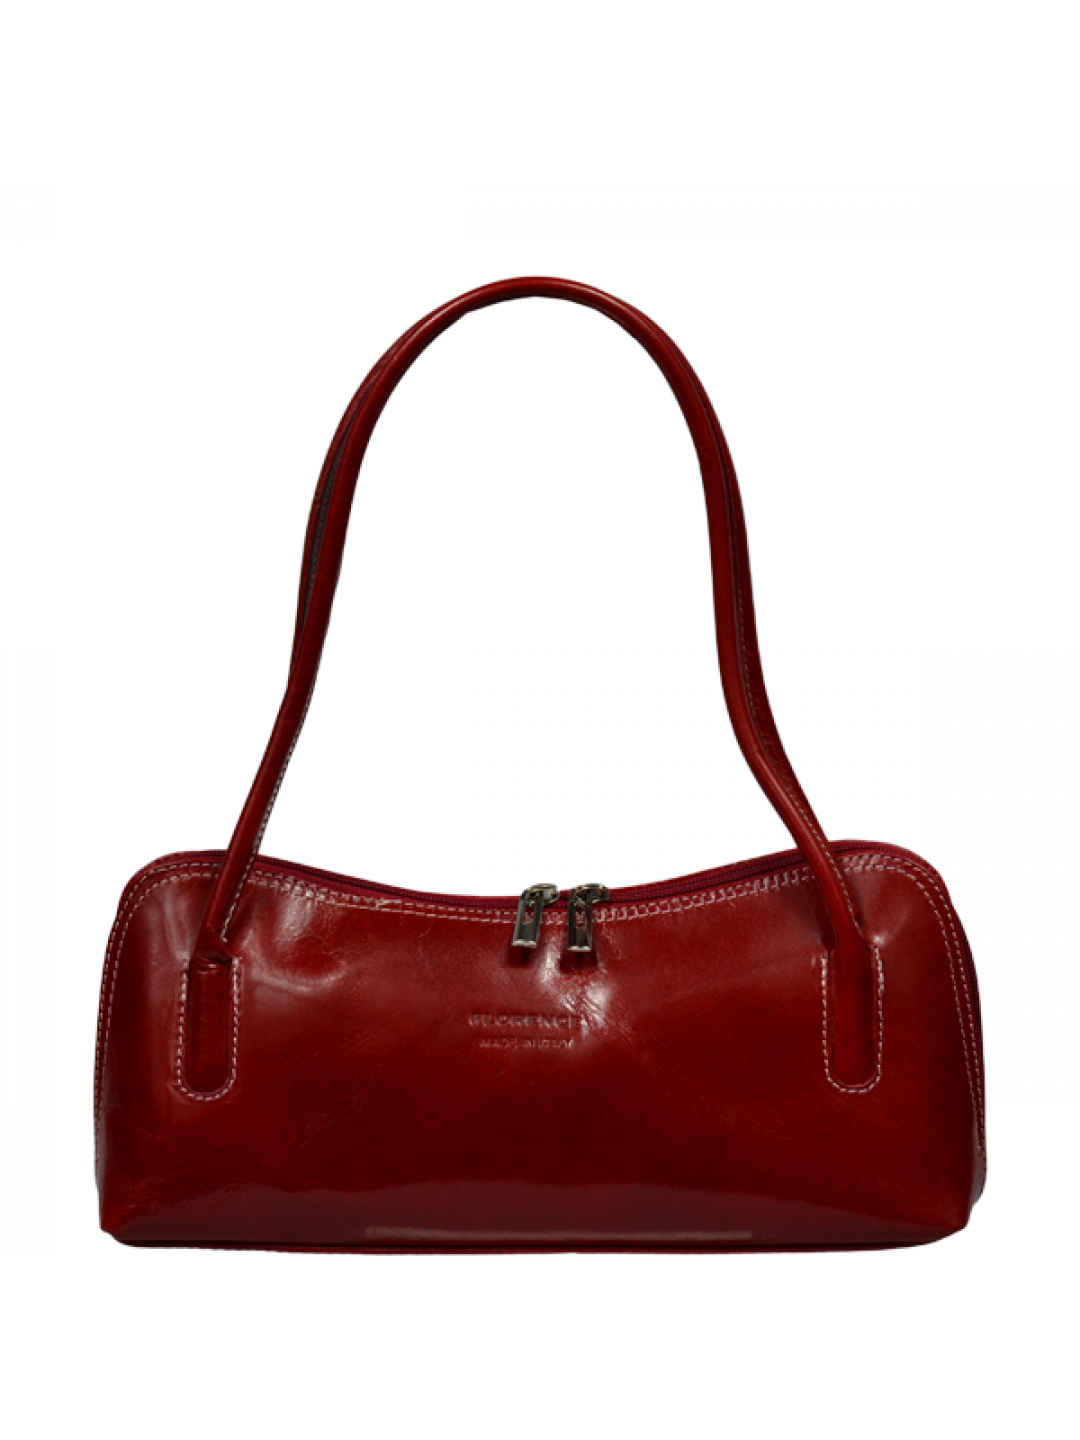 Elegantní kožená kabelka Ciosa Rossa